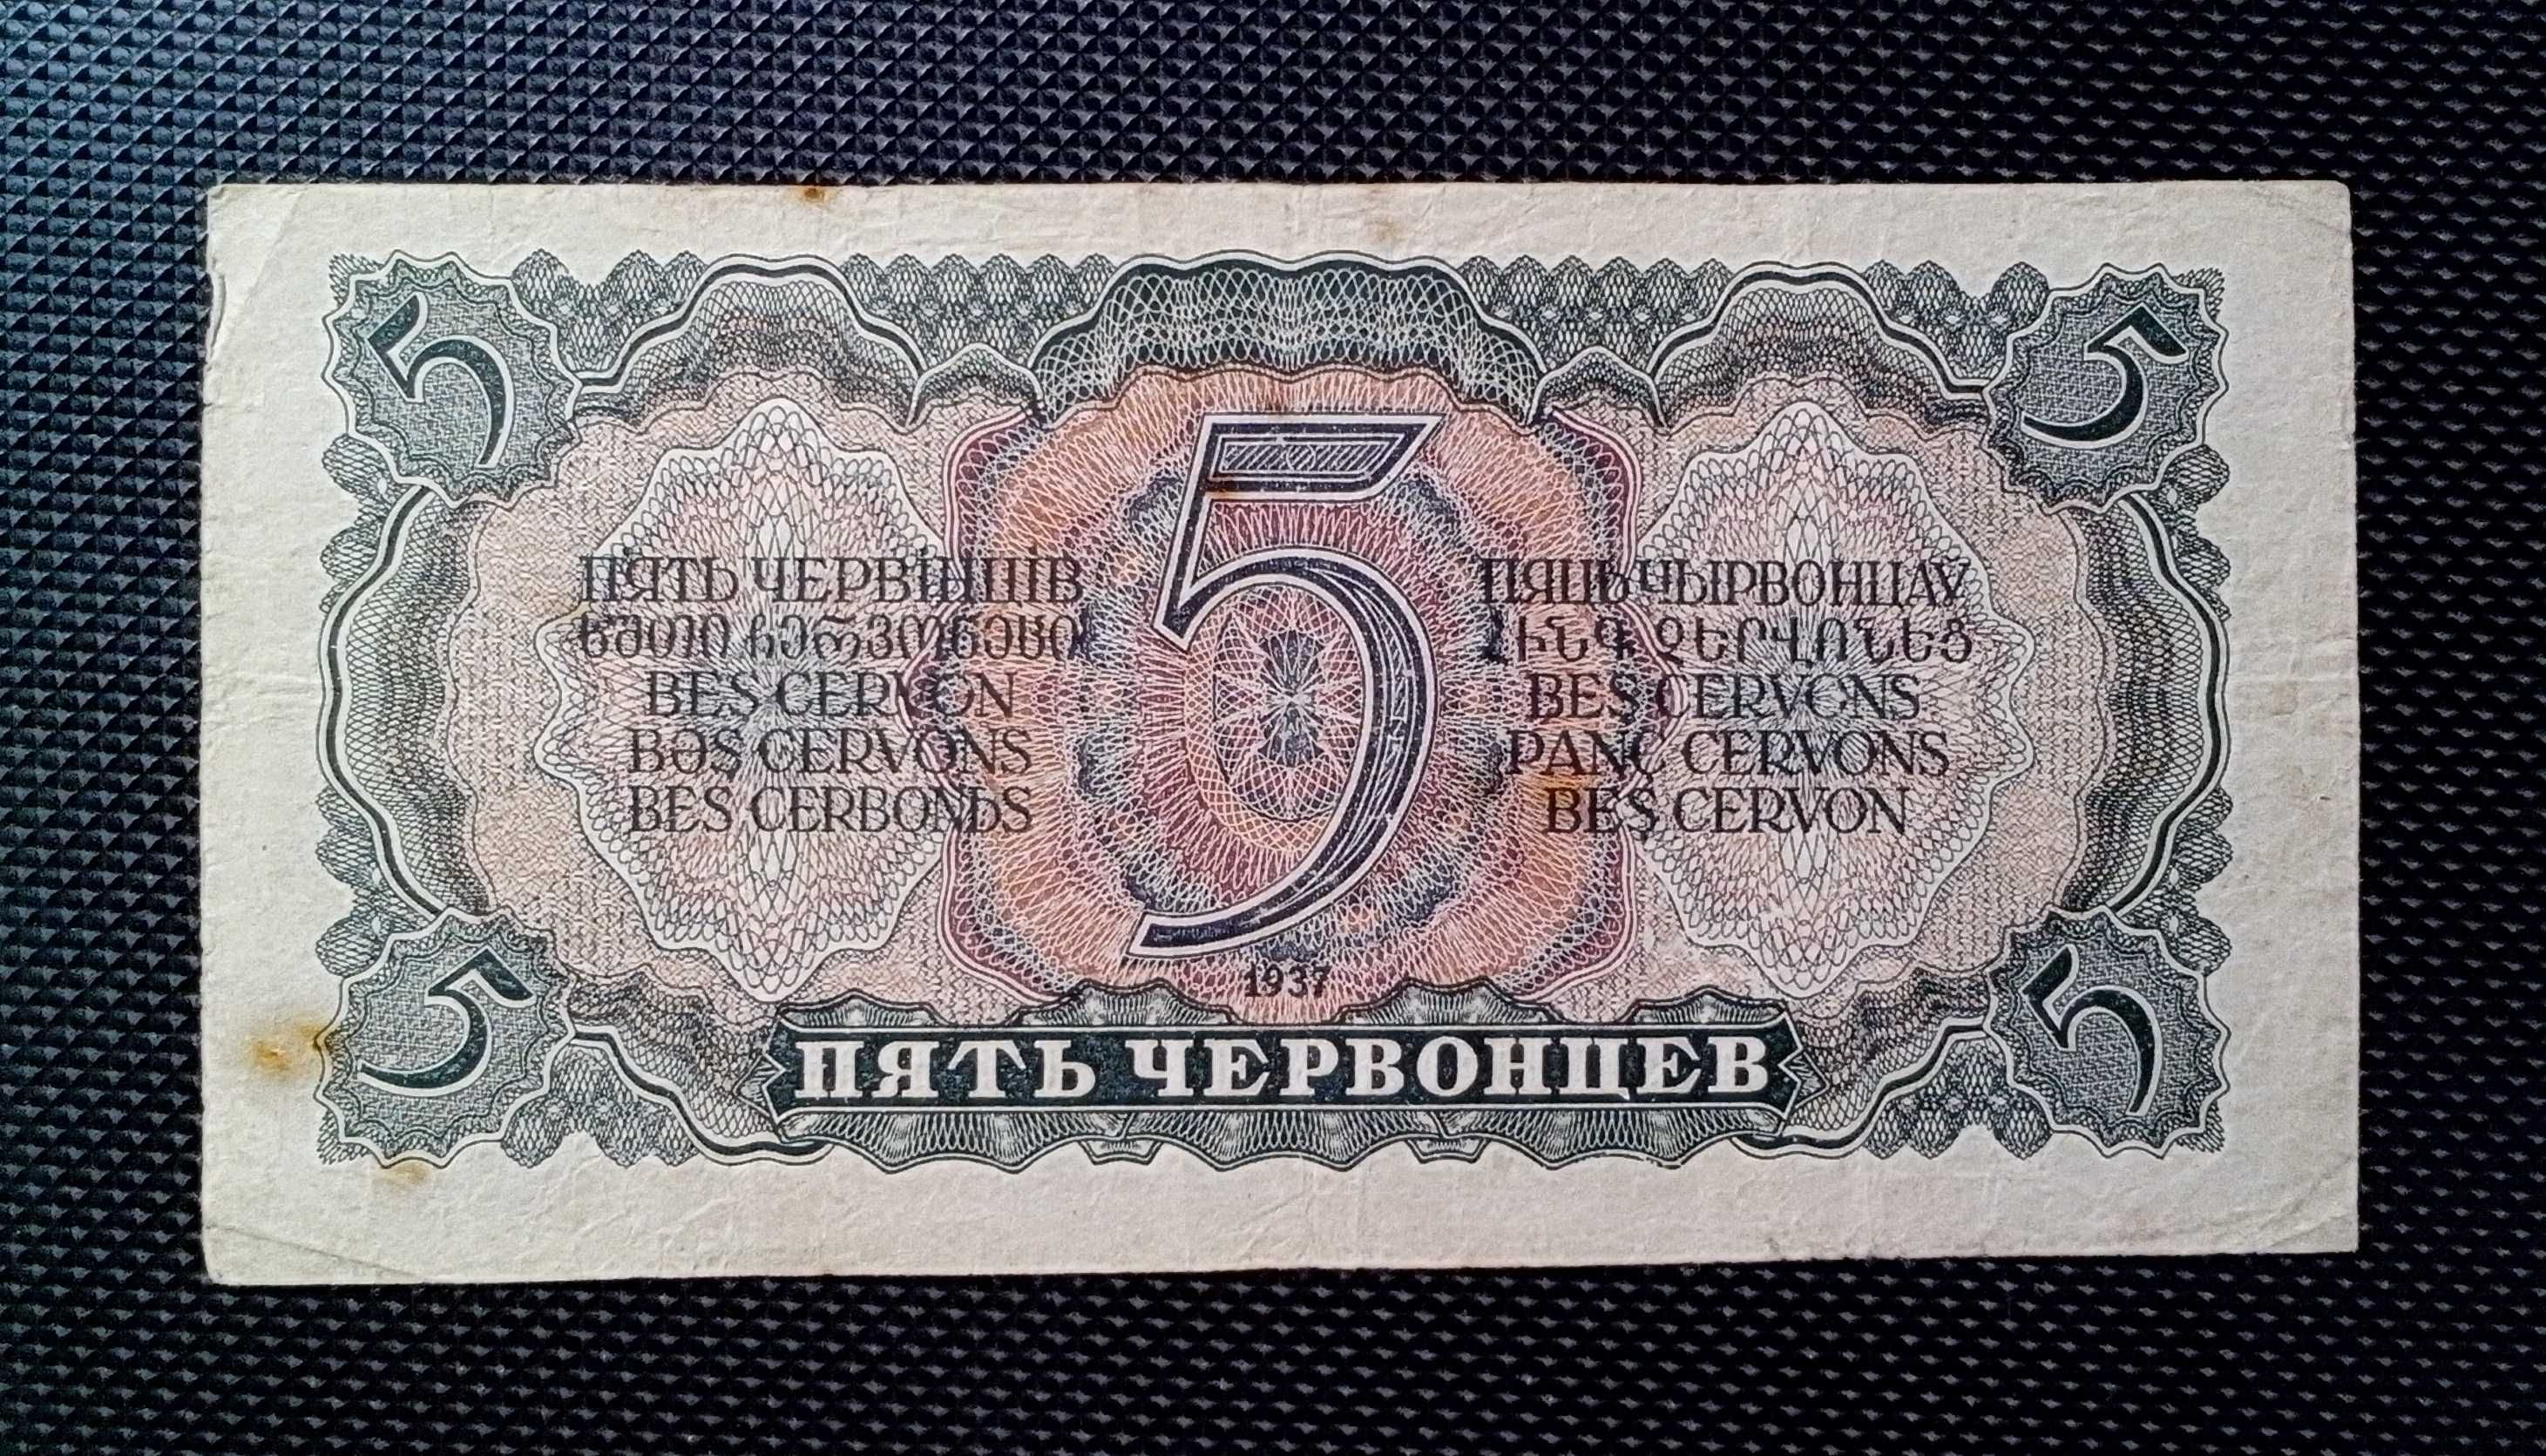 5 червонцев СССР образца 1937 года. Серия Зс № 799954 - VF!